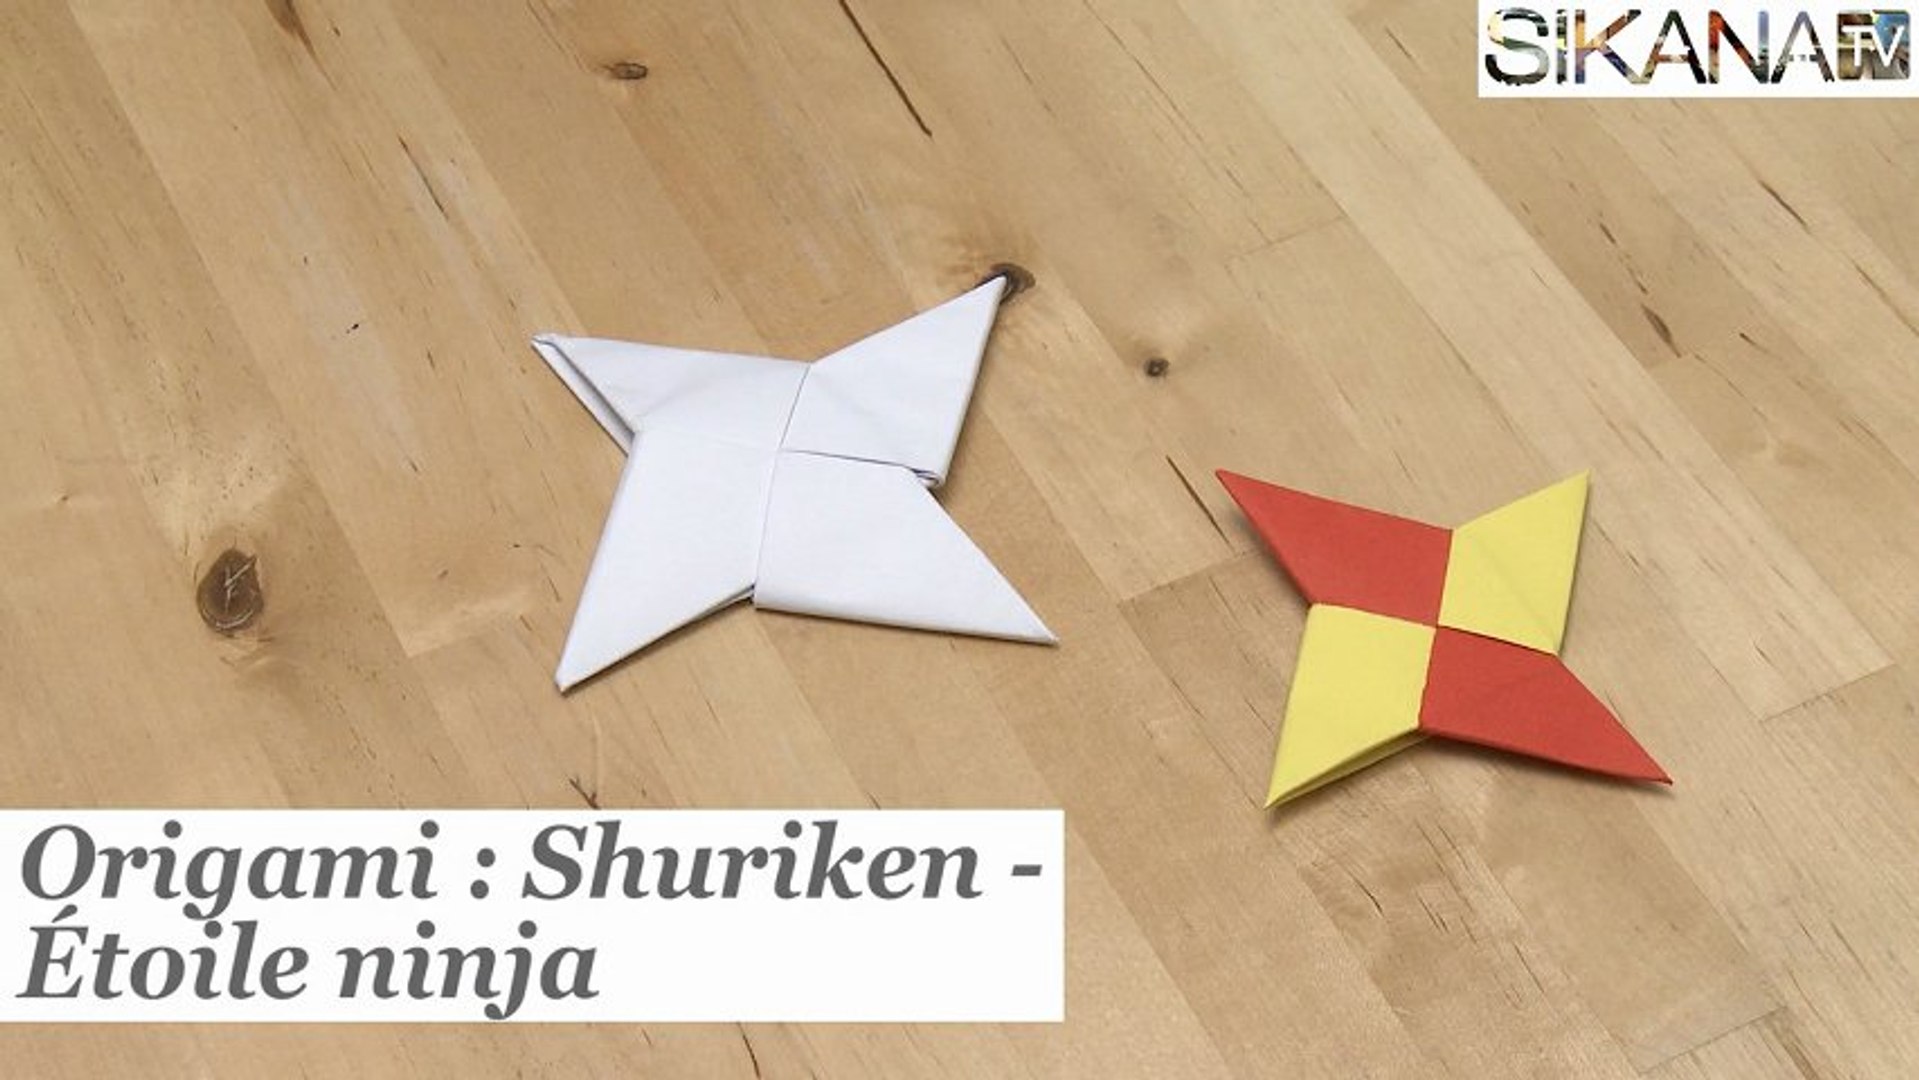 Origami : Comment faire une étoile ninja - shuriken en papier ? - HD -  Vidéo Dailymotion